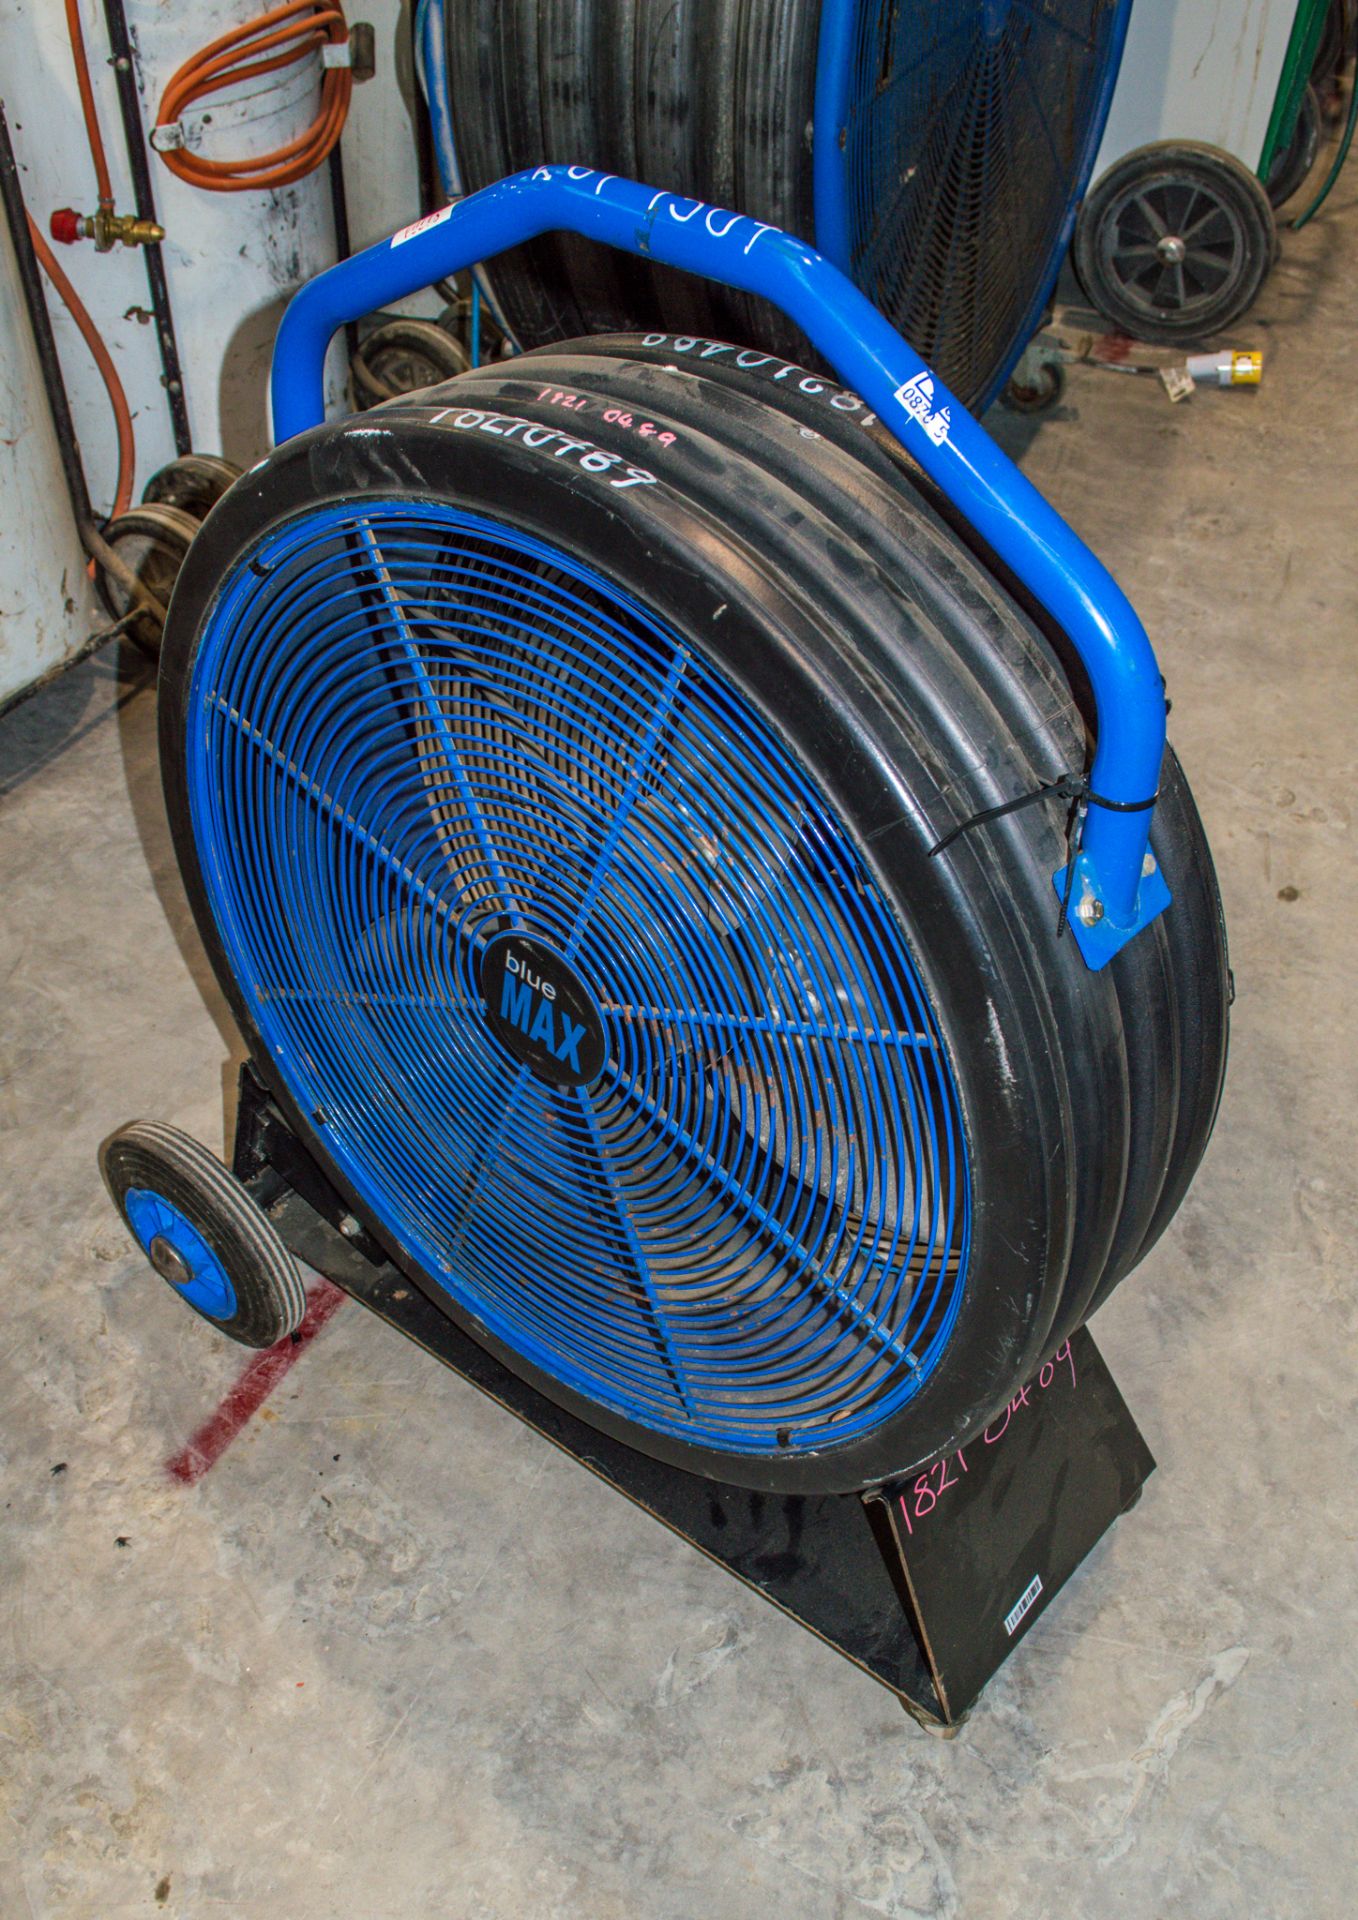 Blue Max 650 240v air circulation fan 18210489